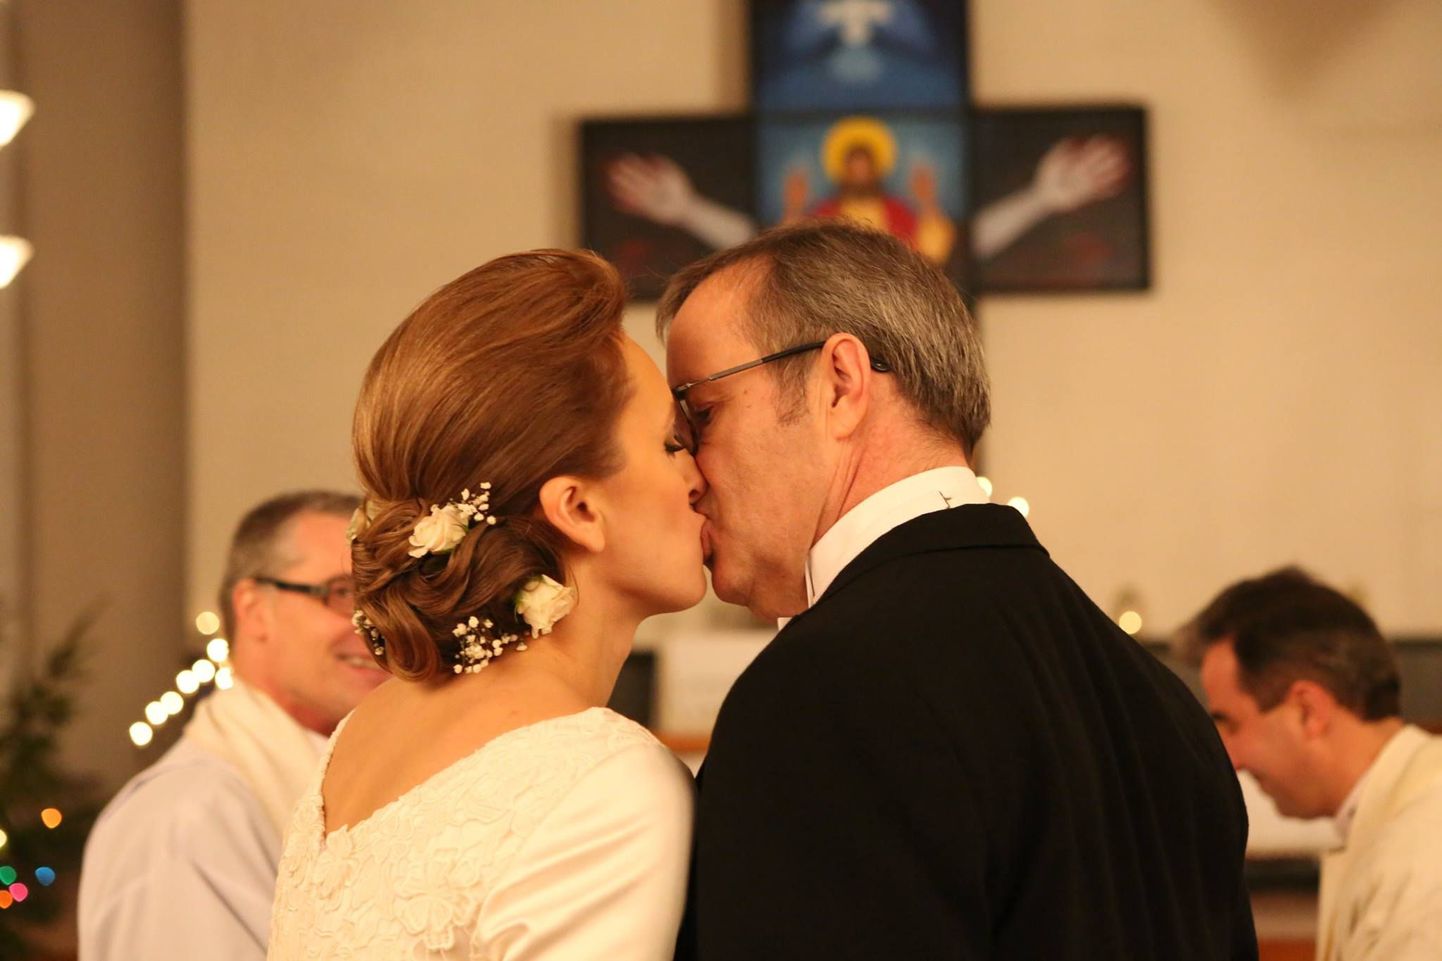 President Toomas Hendrik Ilves ja Ieva Ilves abiellusid Halliste kirikus.